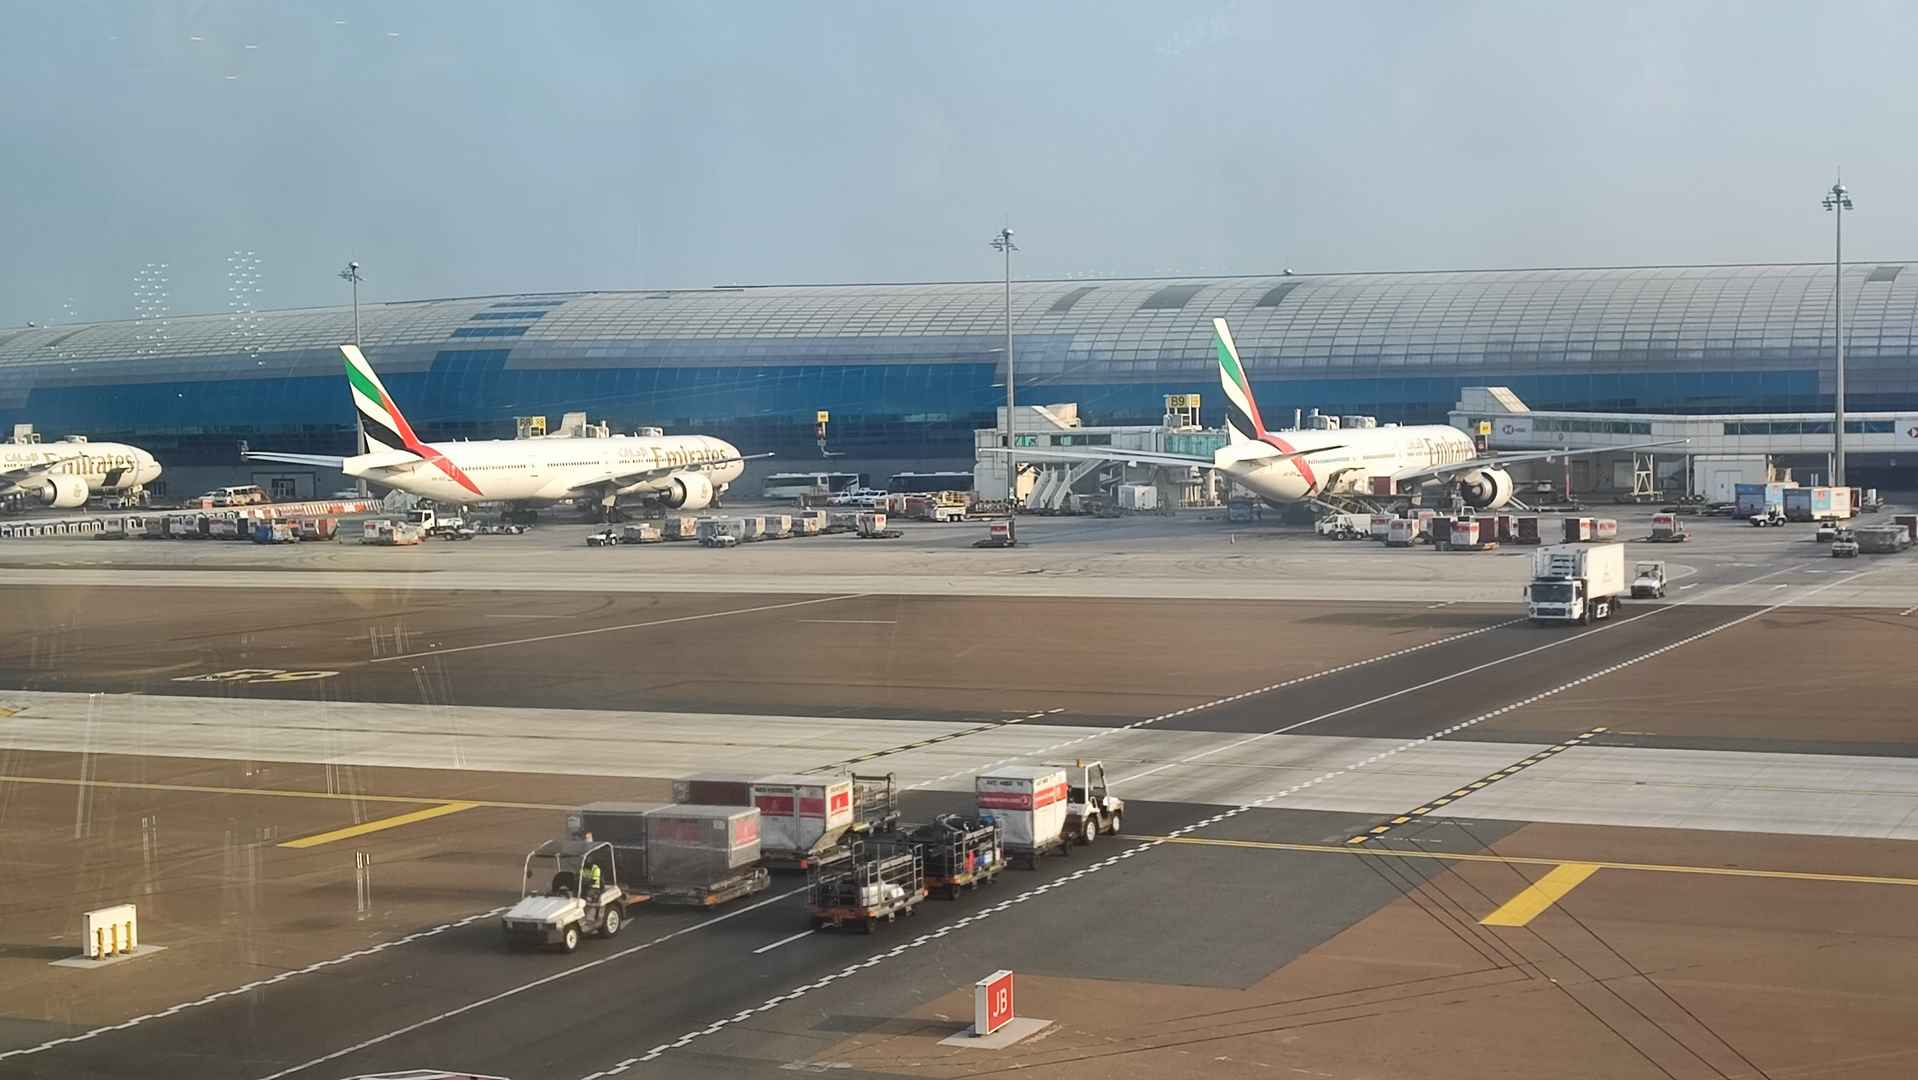 Port lotniczy Dubaj (DXB)